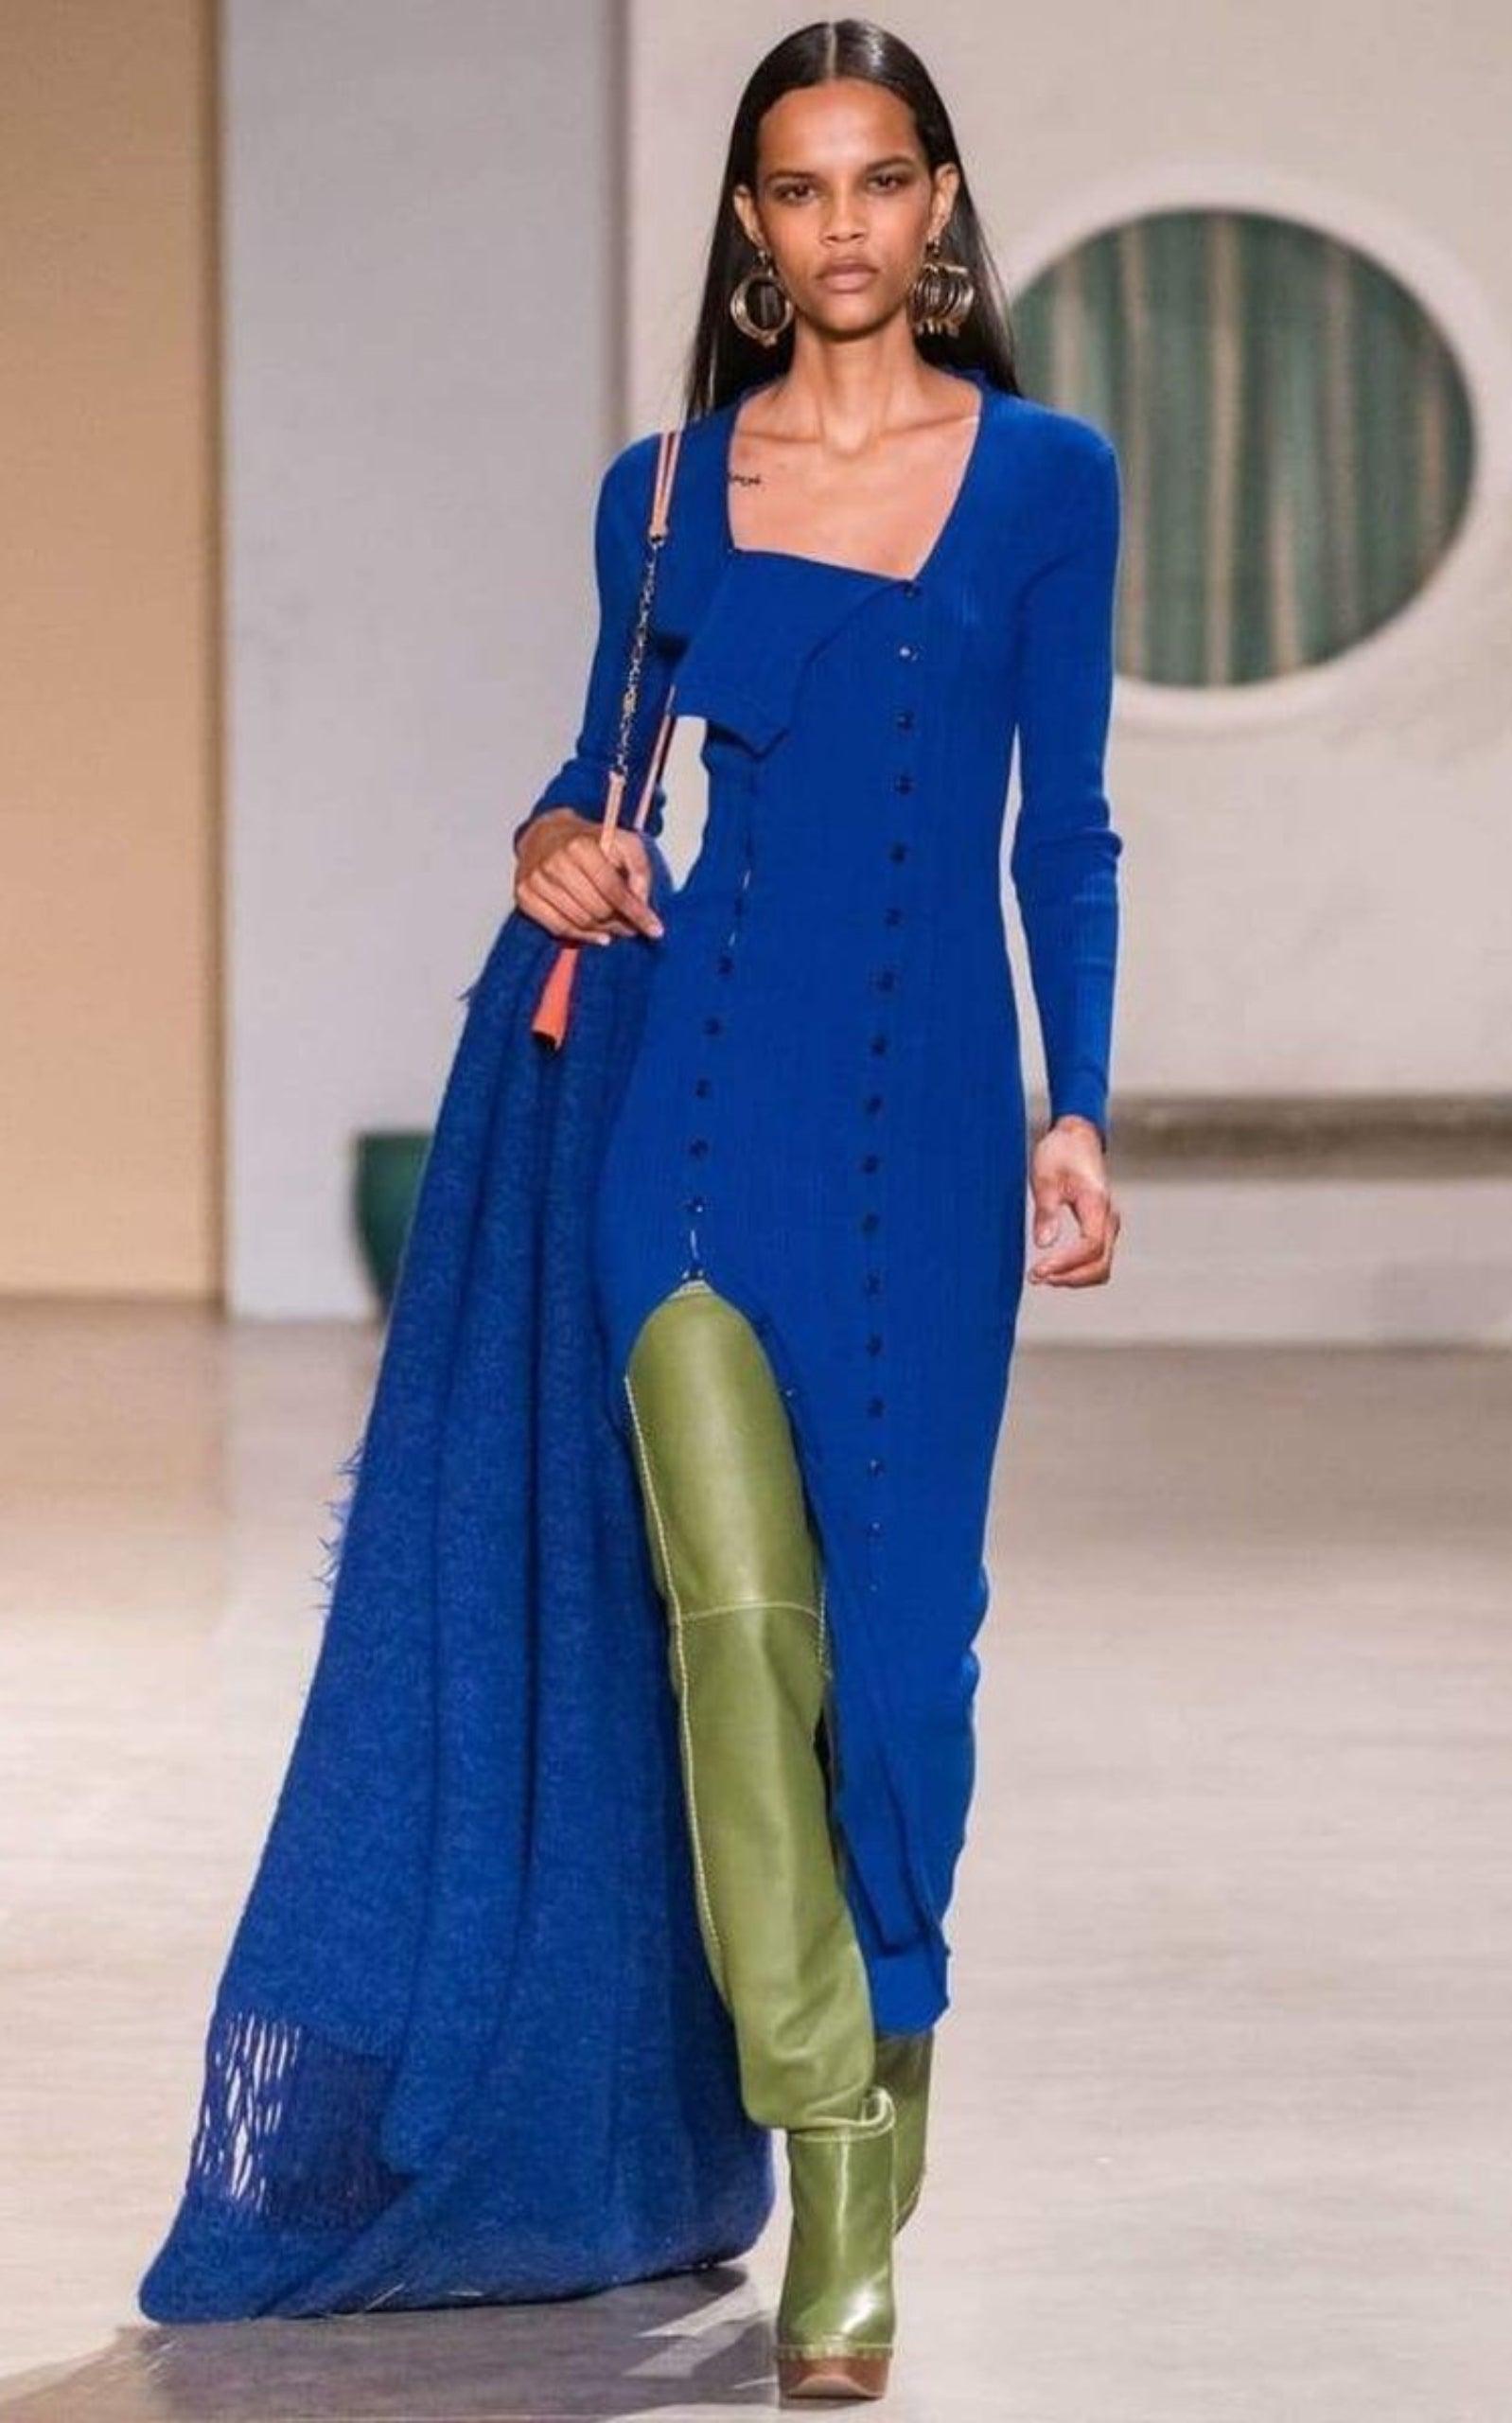  JacquemusLa Robe Maille Ribbed Maxi Dress - Runway Catalog